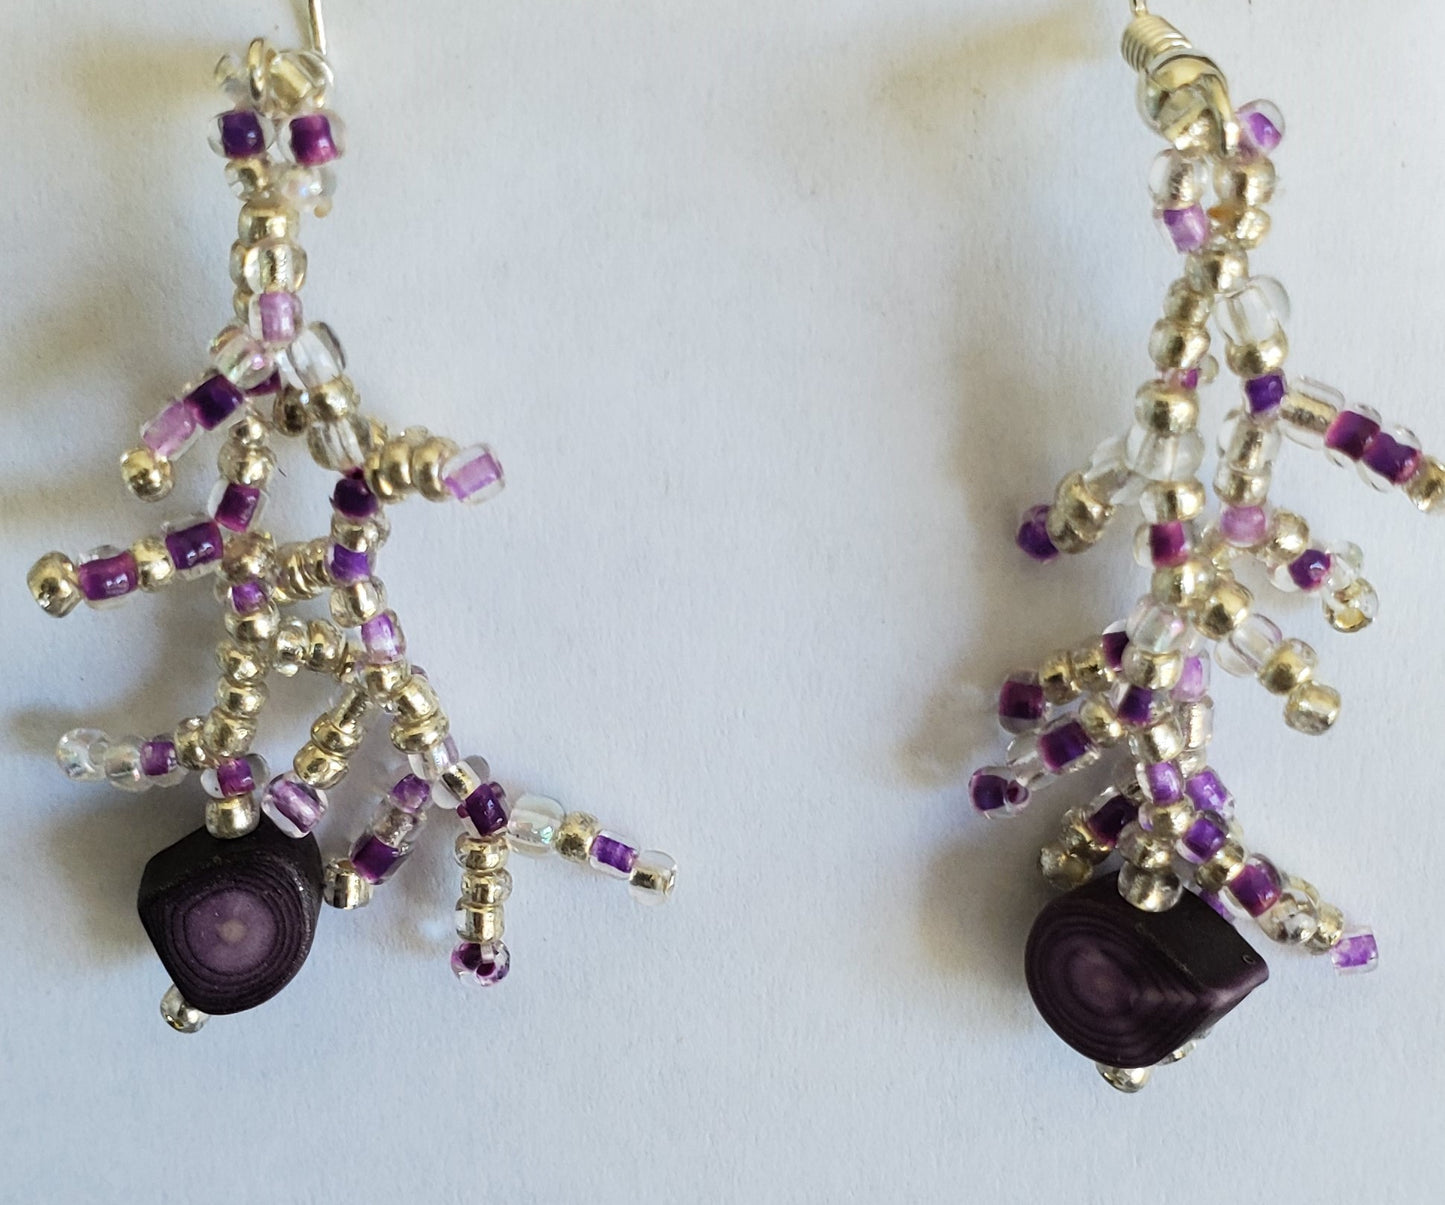 Boucles d'oreilles Fetuei en forme de corail faites à la main, perles argentées et violettes